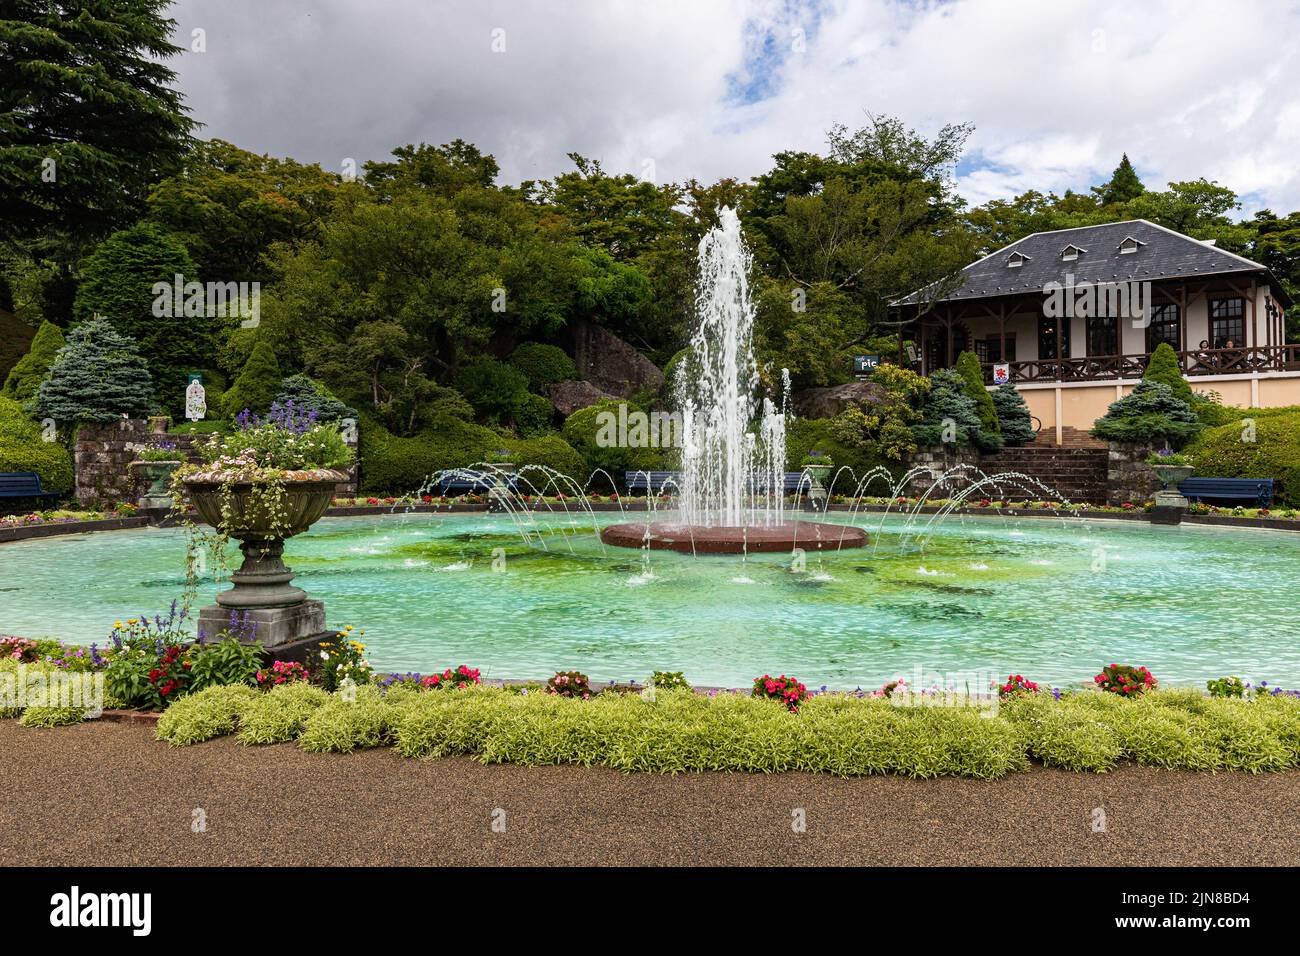 Gora Park Fountain - Gora Park è un parco paesaggistico in stile occidentale situato sul ripido pendio sopra la stazione di Gora nel Parco Nazionale di Hakone. È un relaxi Foto Stock